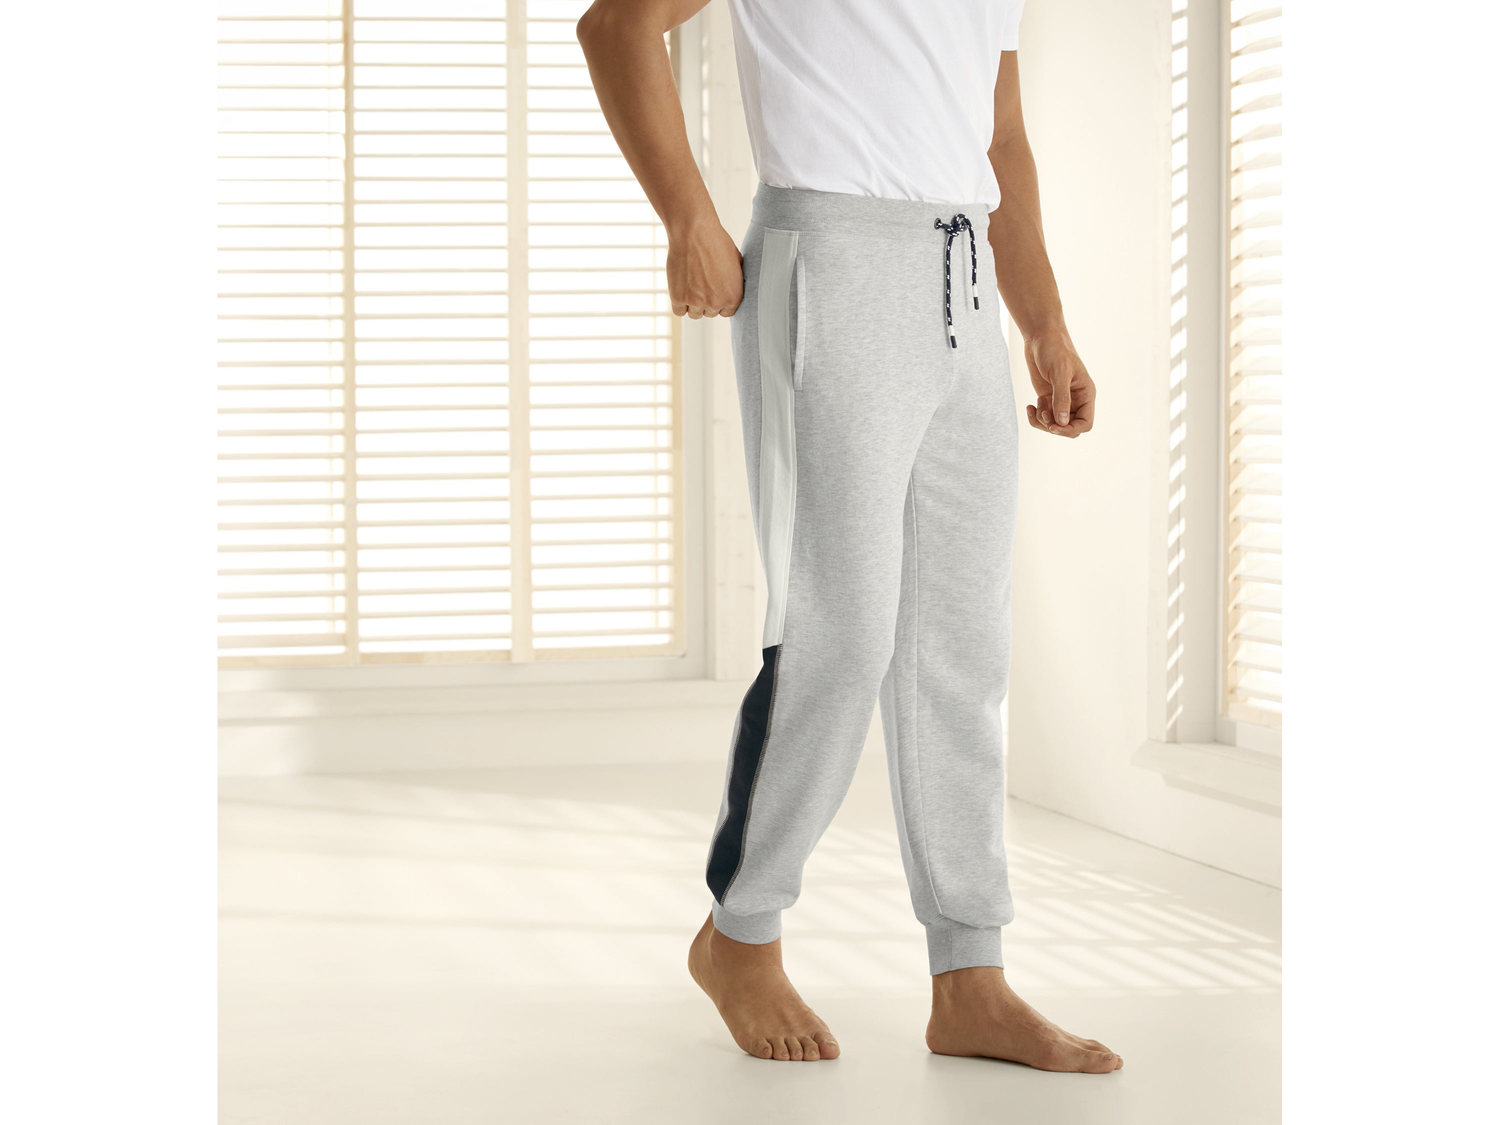 Spodnie dresowe Livergy, cena 39,99 PLN 
- rozmiary: M-XL
- wygodne ściągacze
- ...